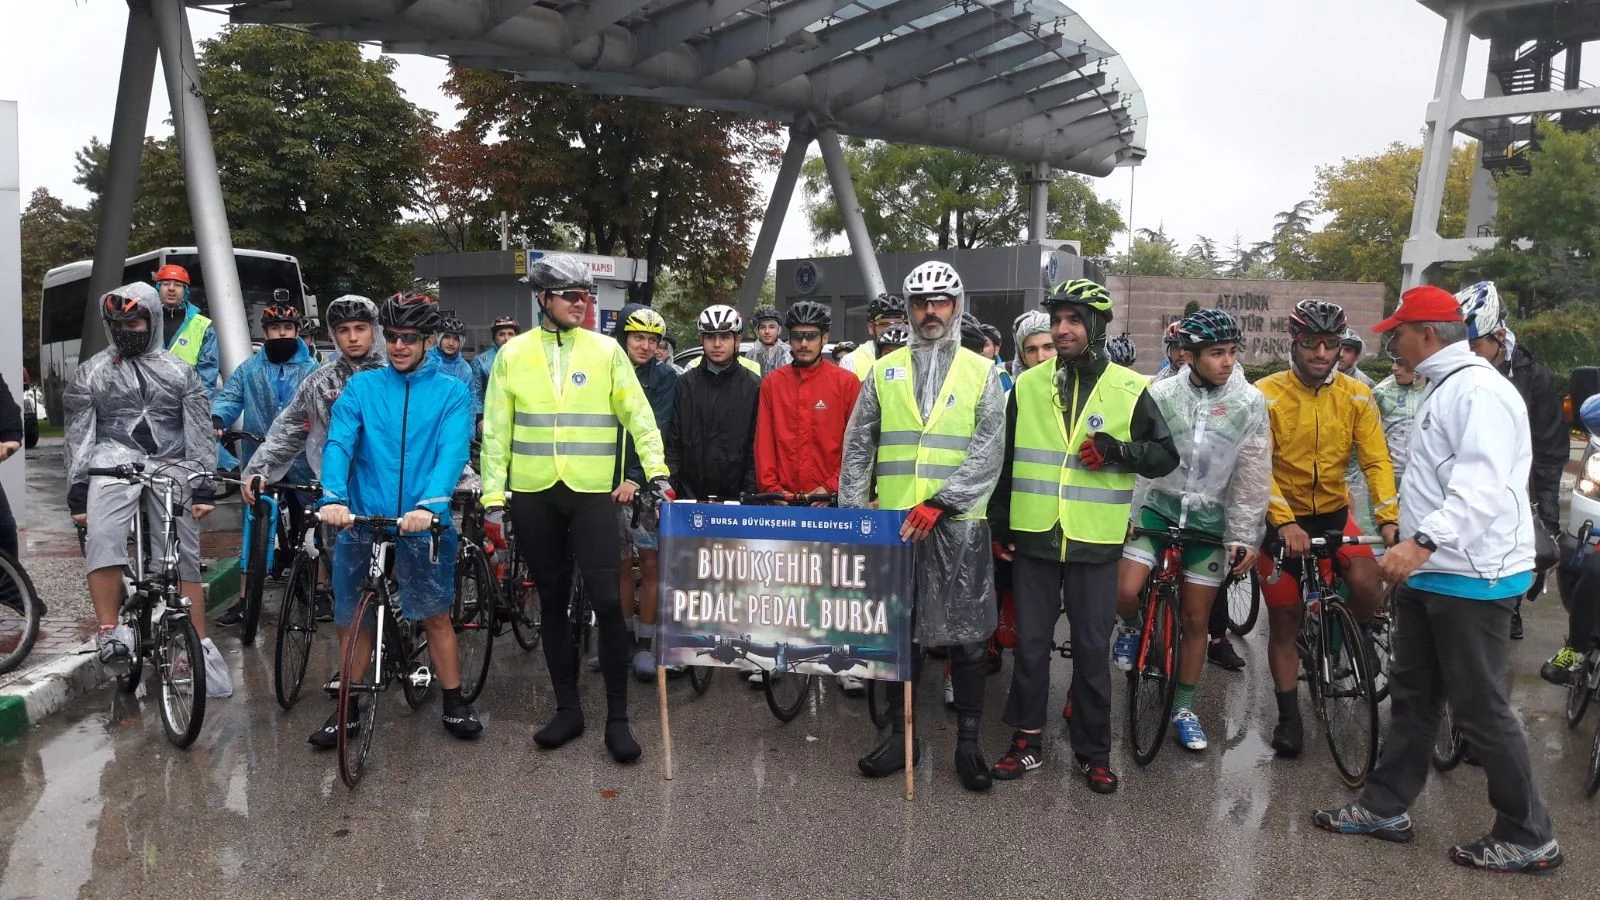 Büyükşehir ile pedal pedal Bursa